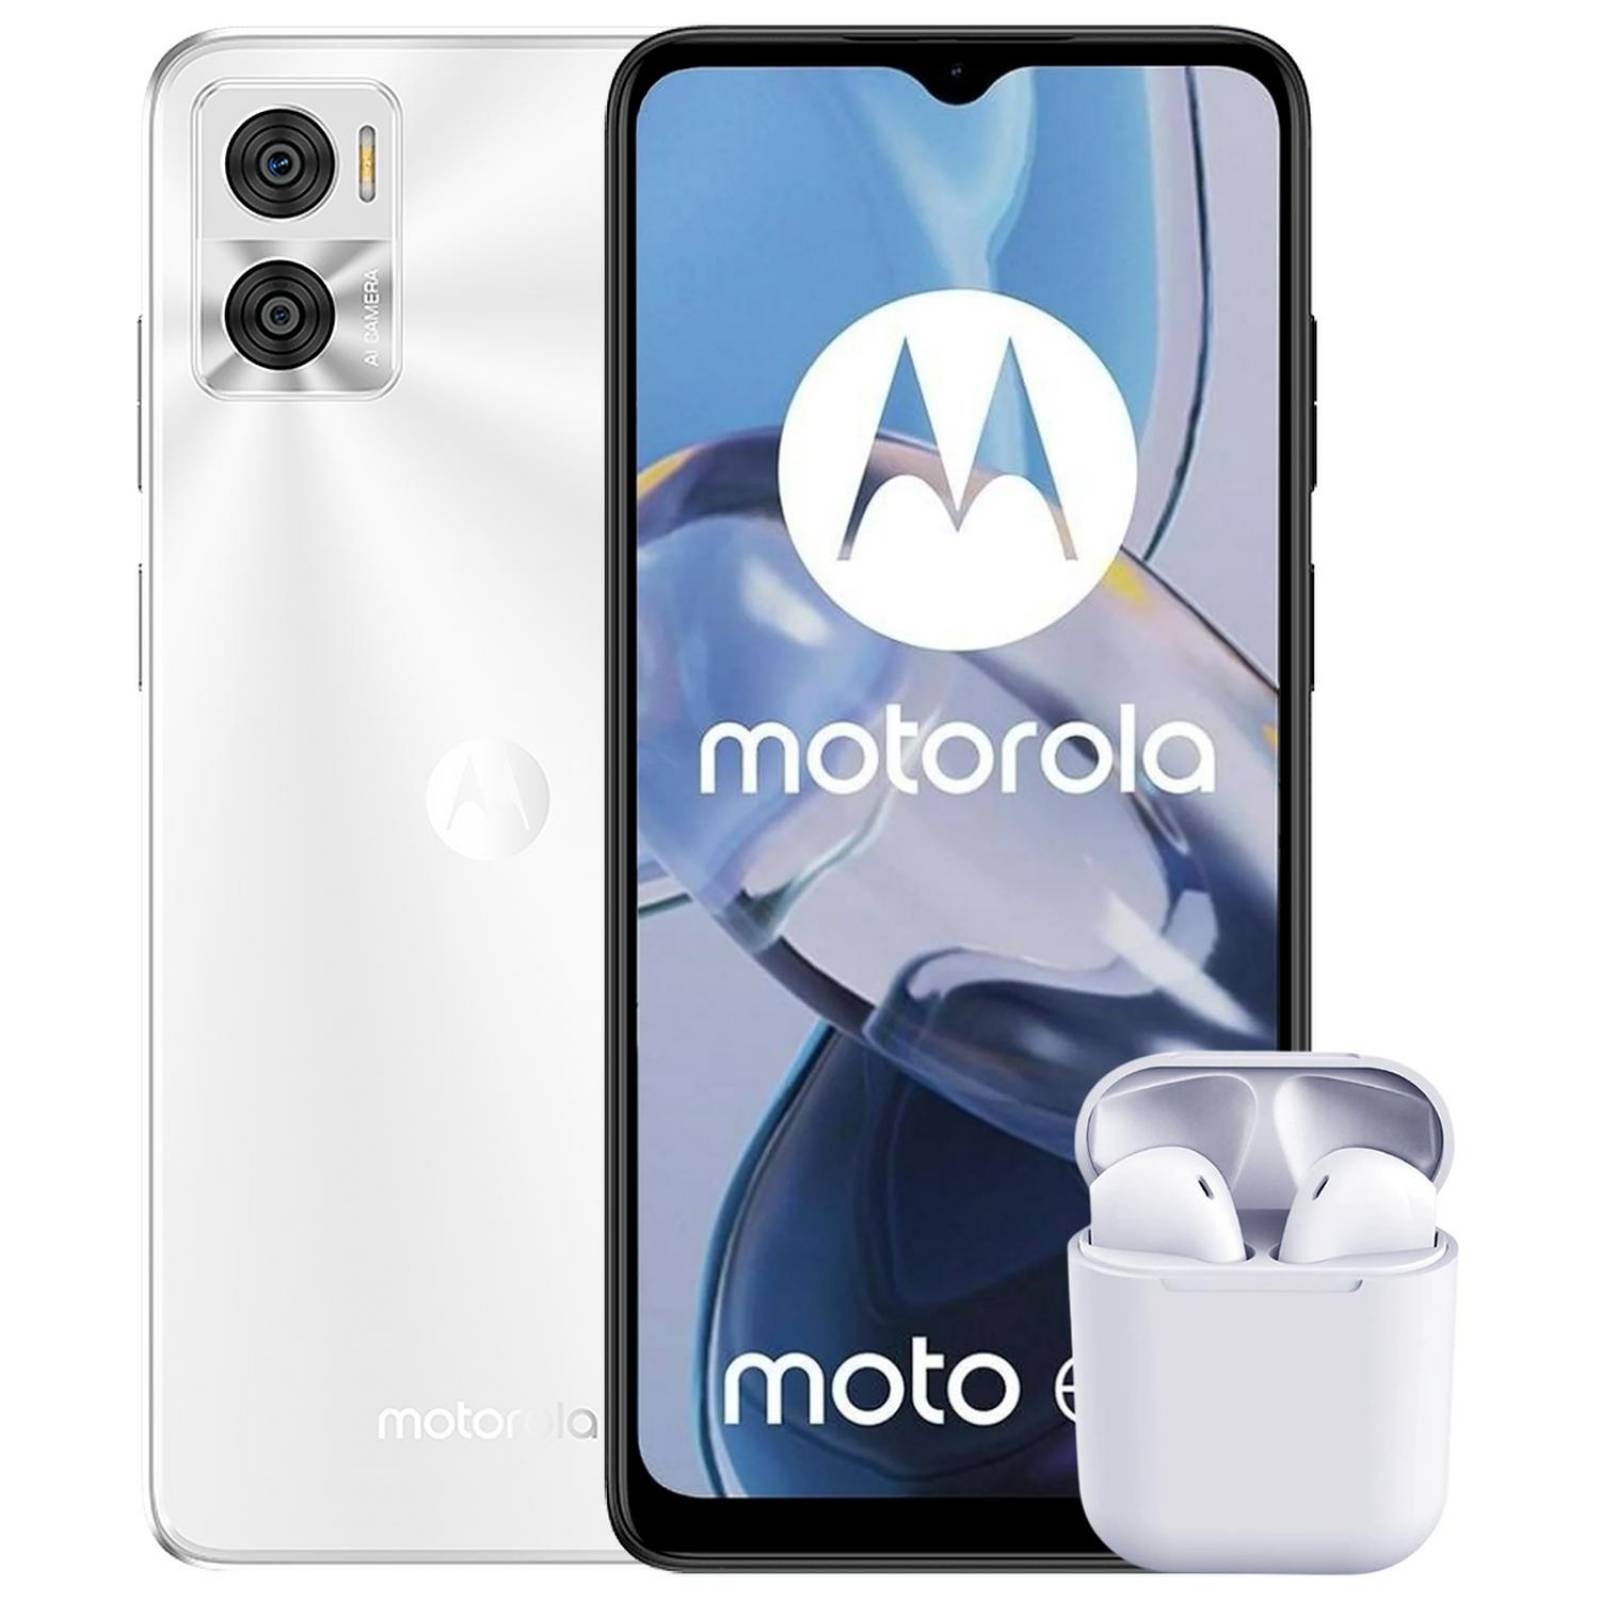 Motorola Moto G54 LCD 6.5 pulgadas Desbloqueado